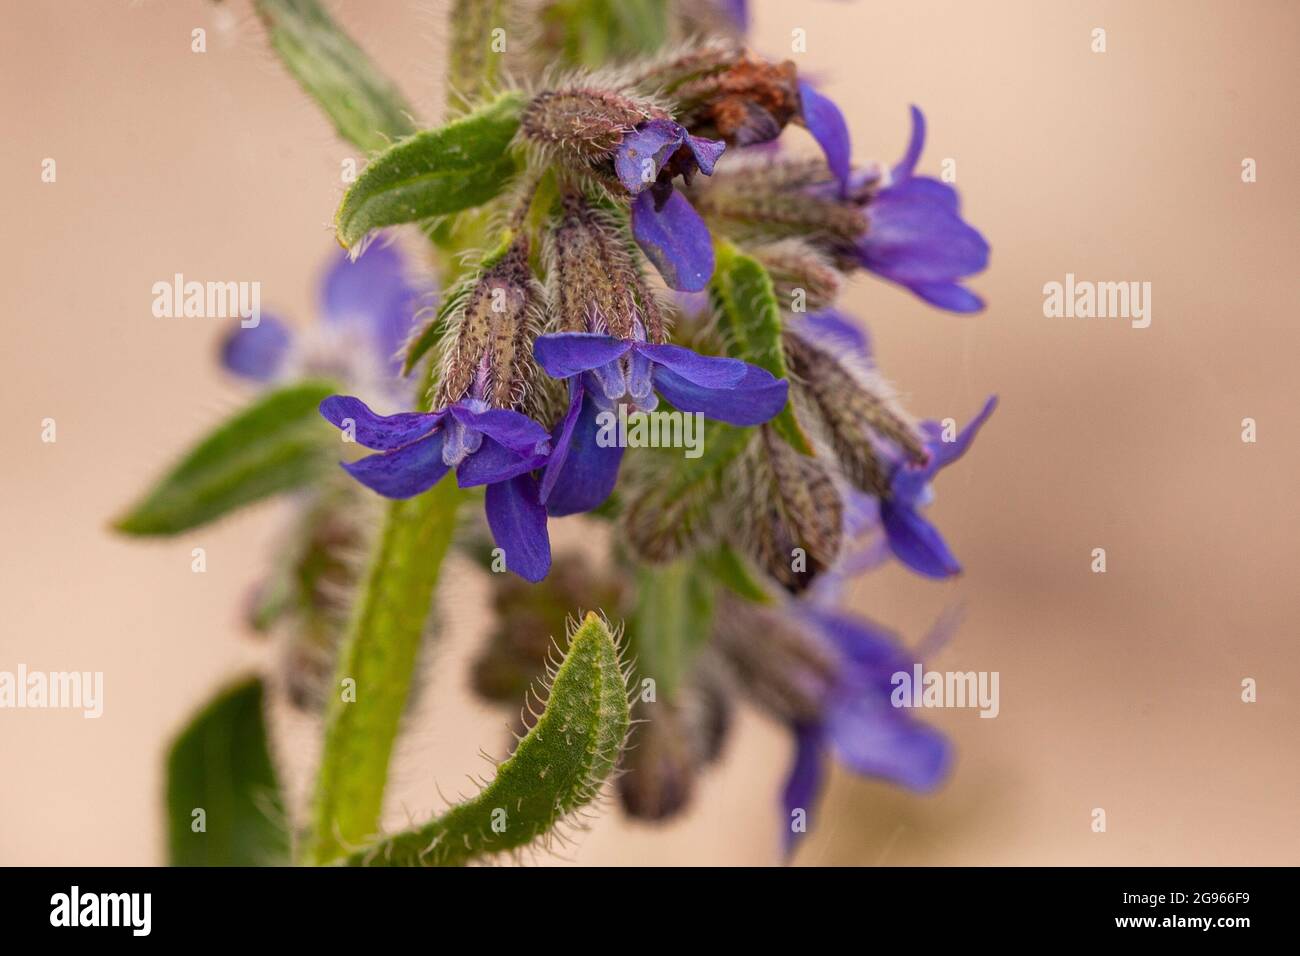 La lingua di bue comune è una pianta selvatica insetto-amichevole. Foto Stock